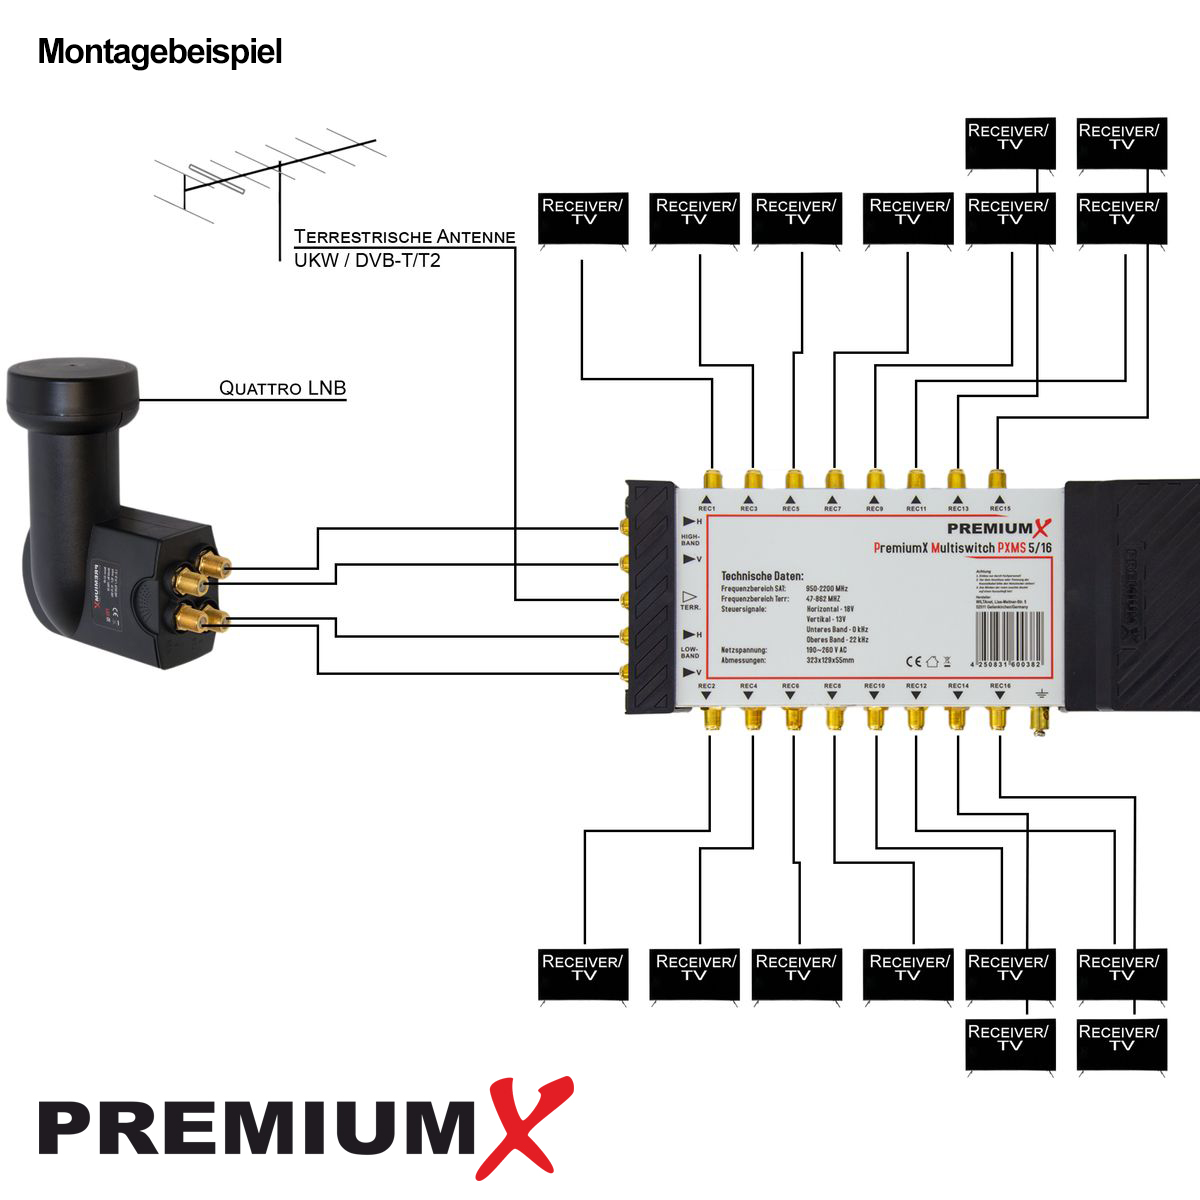 PREMIUMX Multischalter Set 5/16 Sat-Multischalter SAT Verteiler F-Montageschlüssel Multiswitch